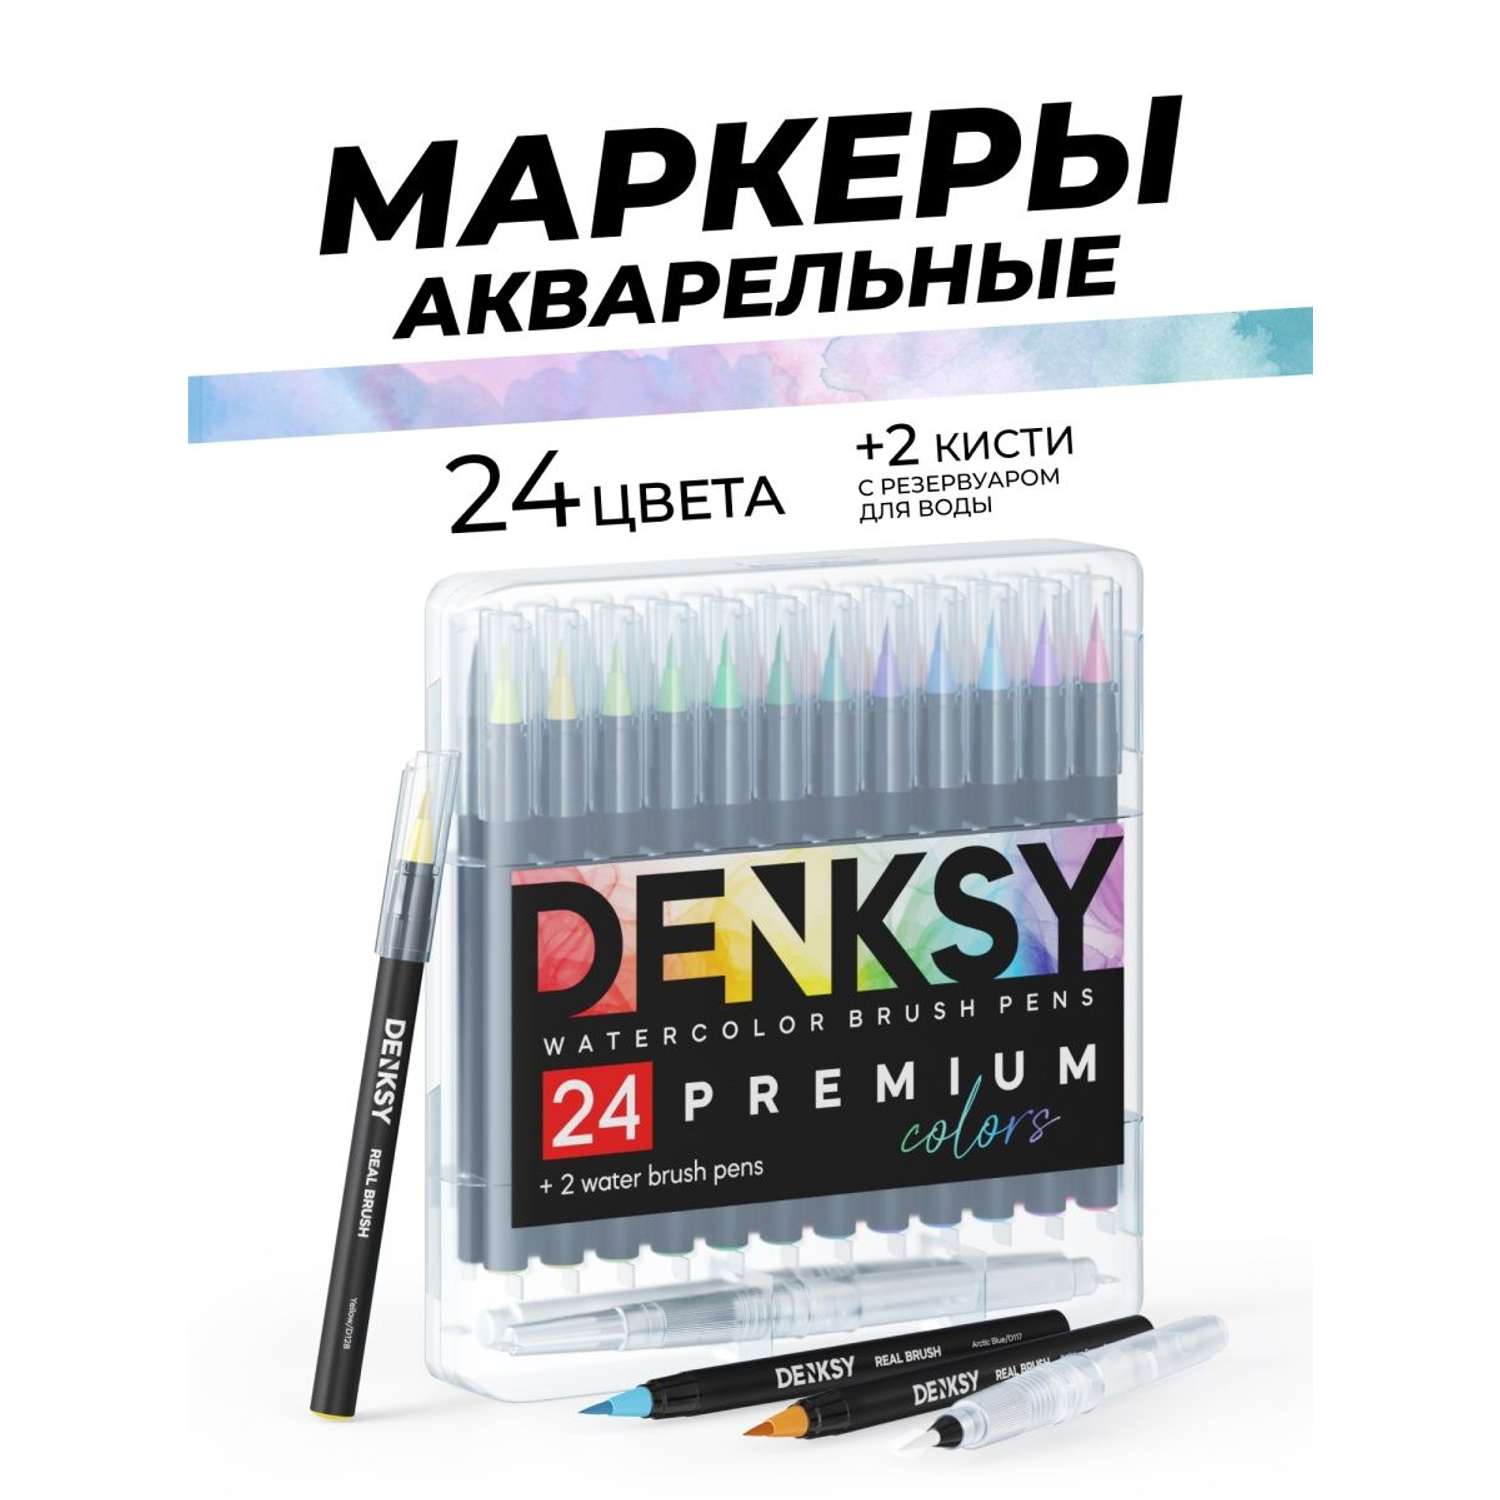 Акварельные маркеры DENKSY 24 цвета и 2 кисти с резервуаром - фото 1